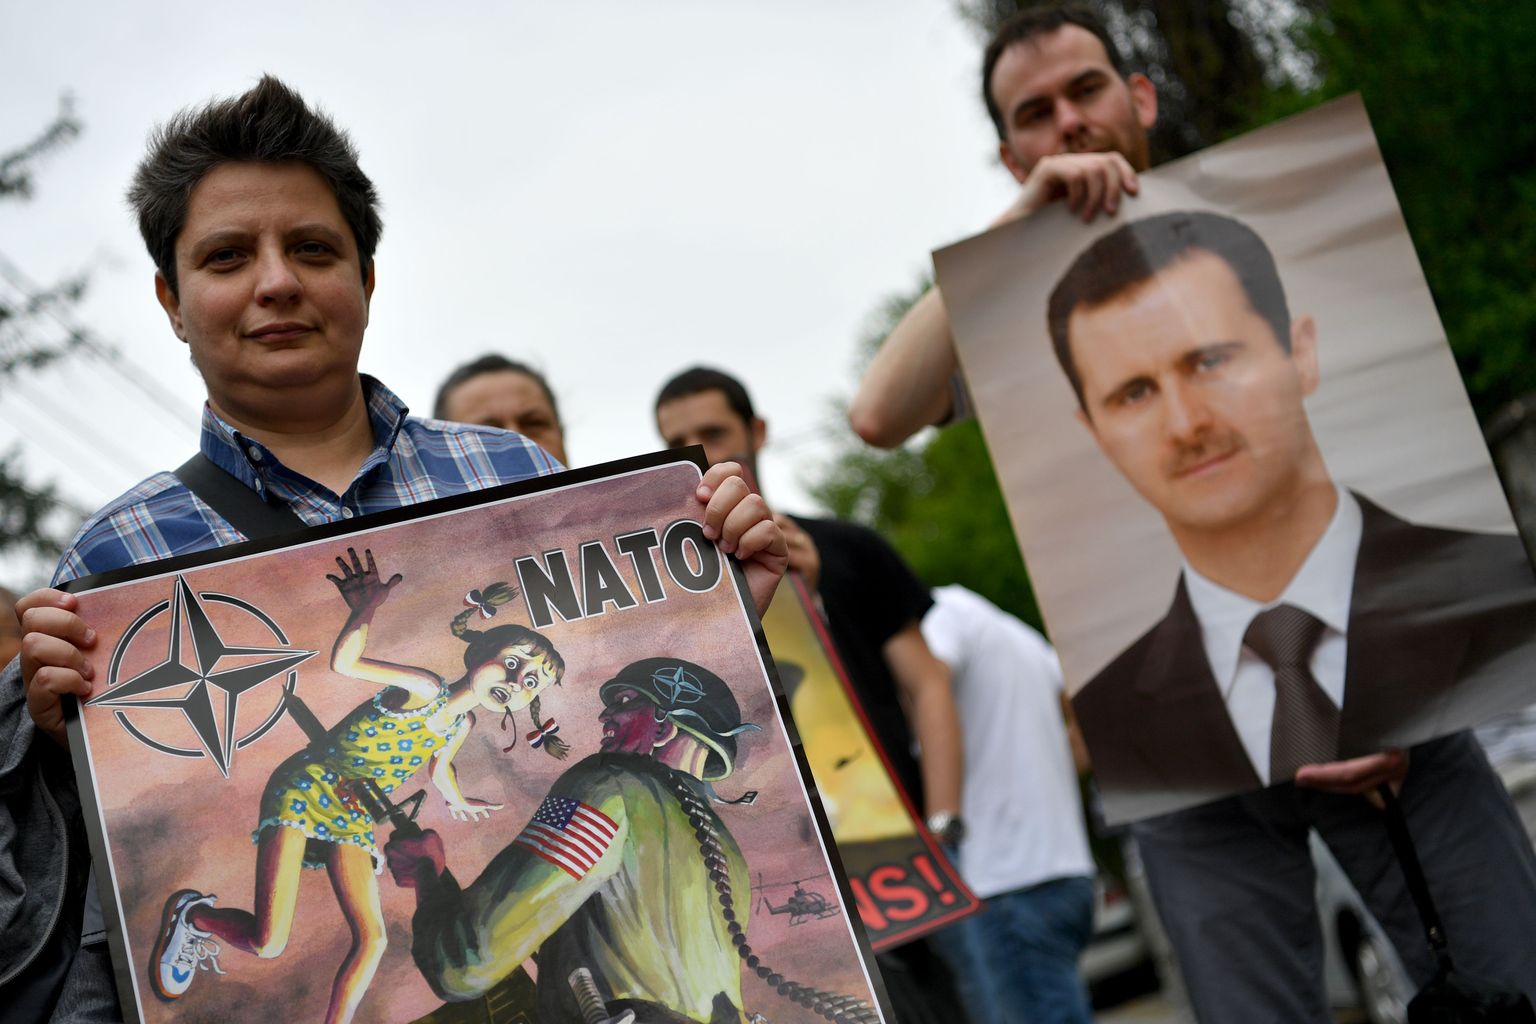 Süüria presidendi Bashar al-Assadi toetajad Damaskuse tänavatel NATO ja lääne vastu meelt avaldamas.